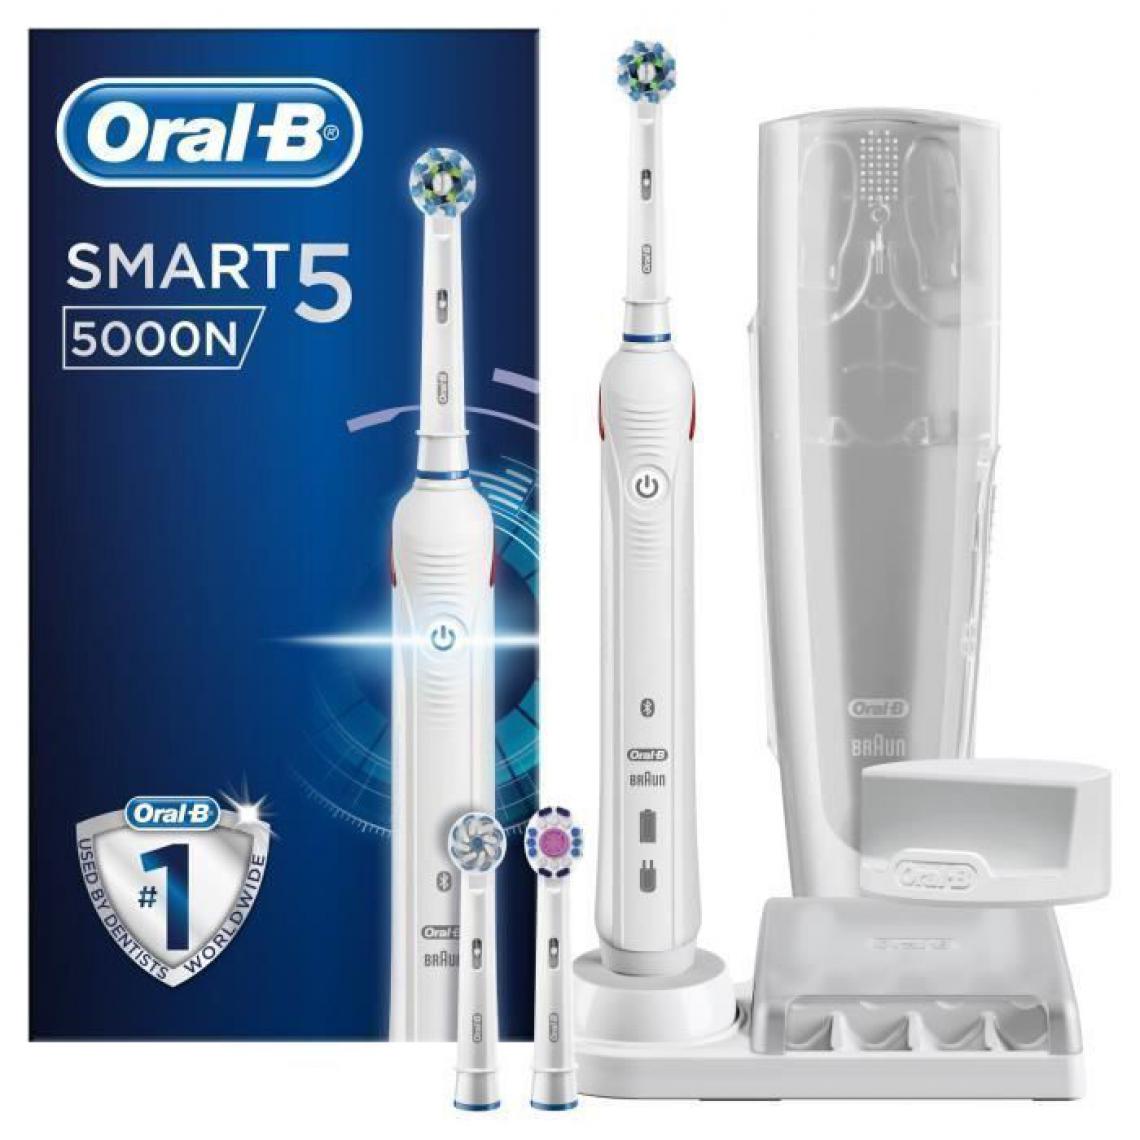 Oral-B - Oral-B Smart 5 5000N Brosse a dents electrique par BRAUN - Blanc - Brosse à dents électrique